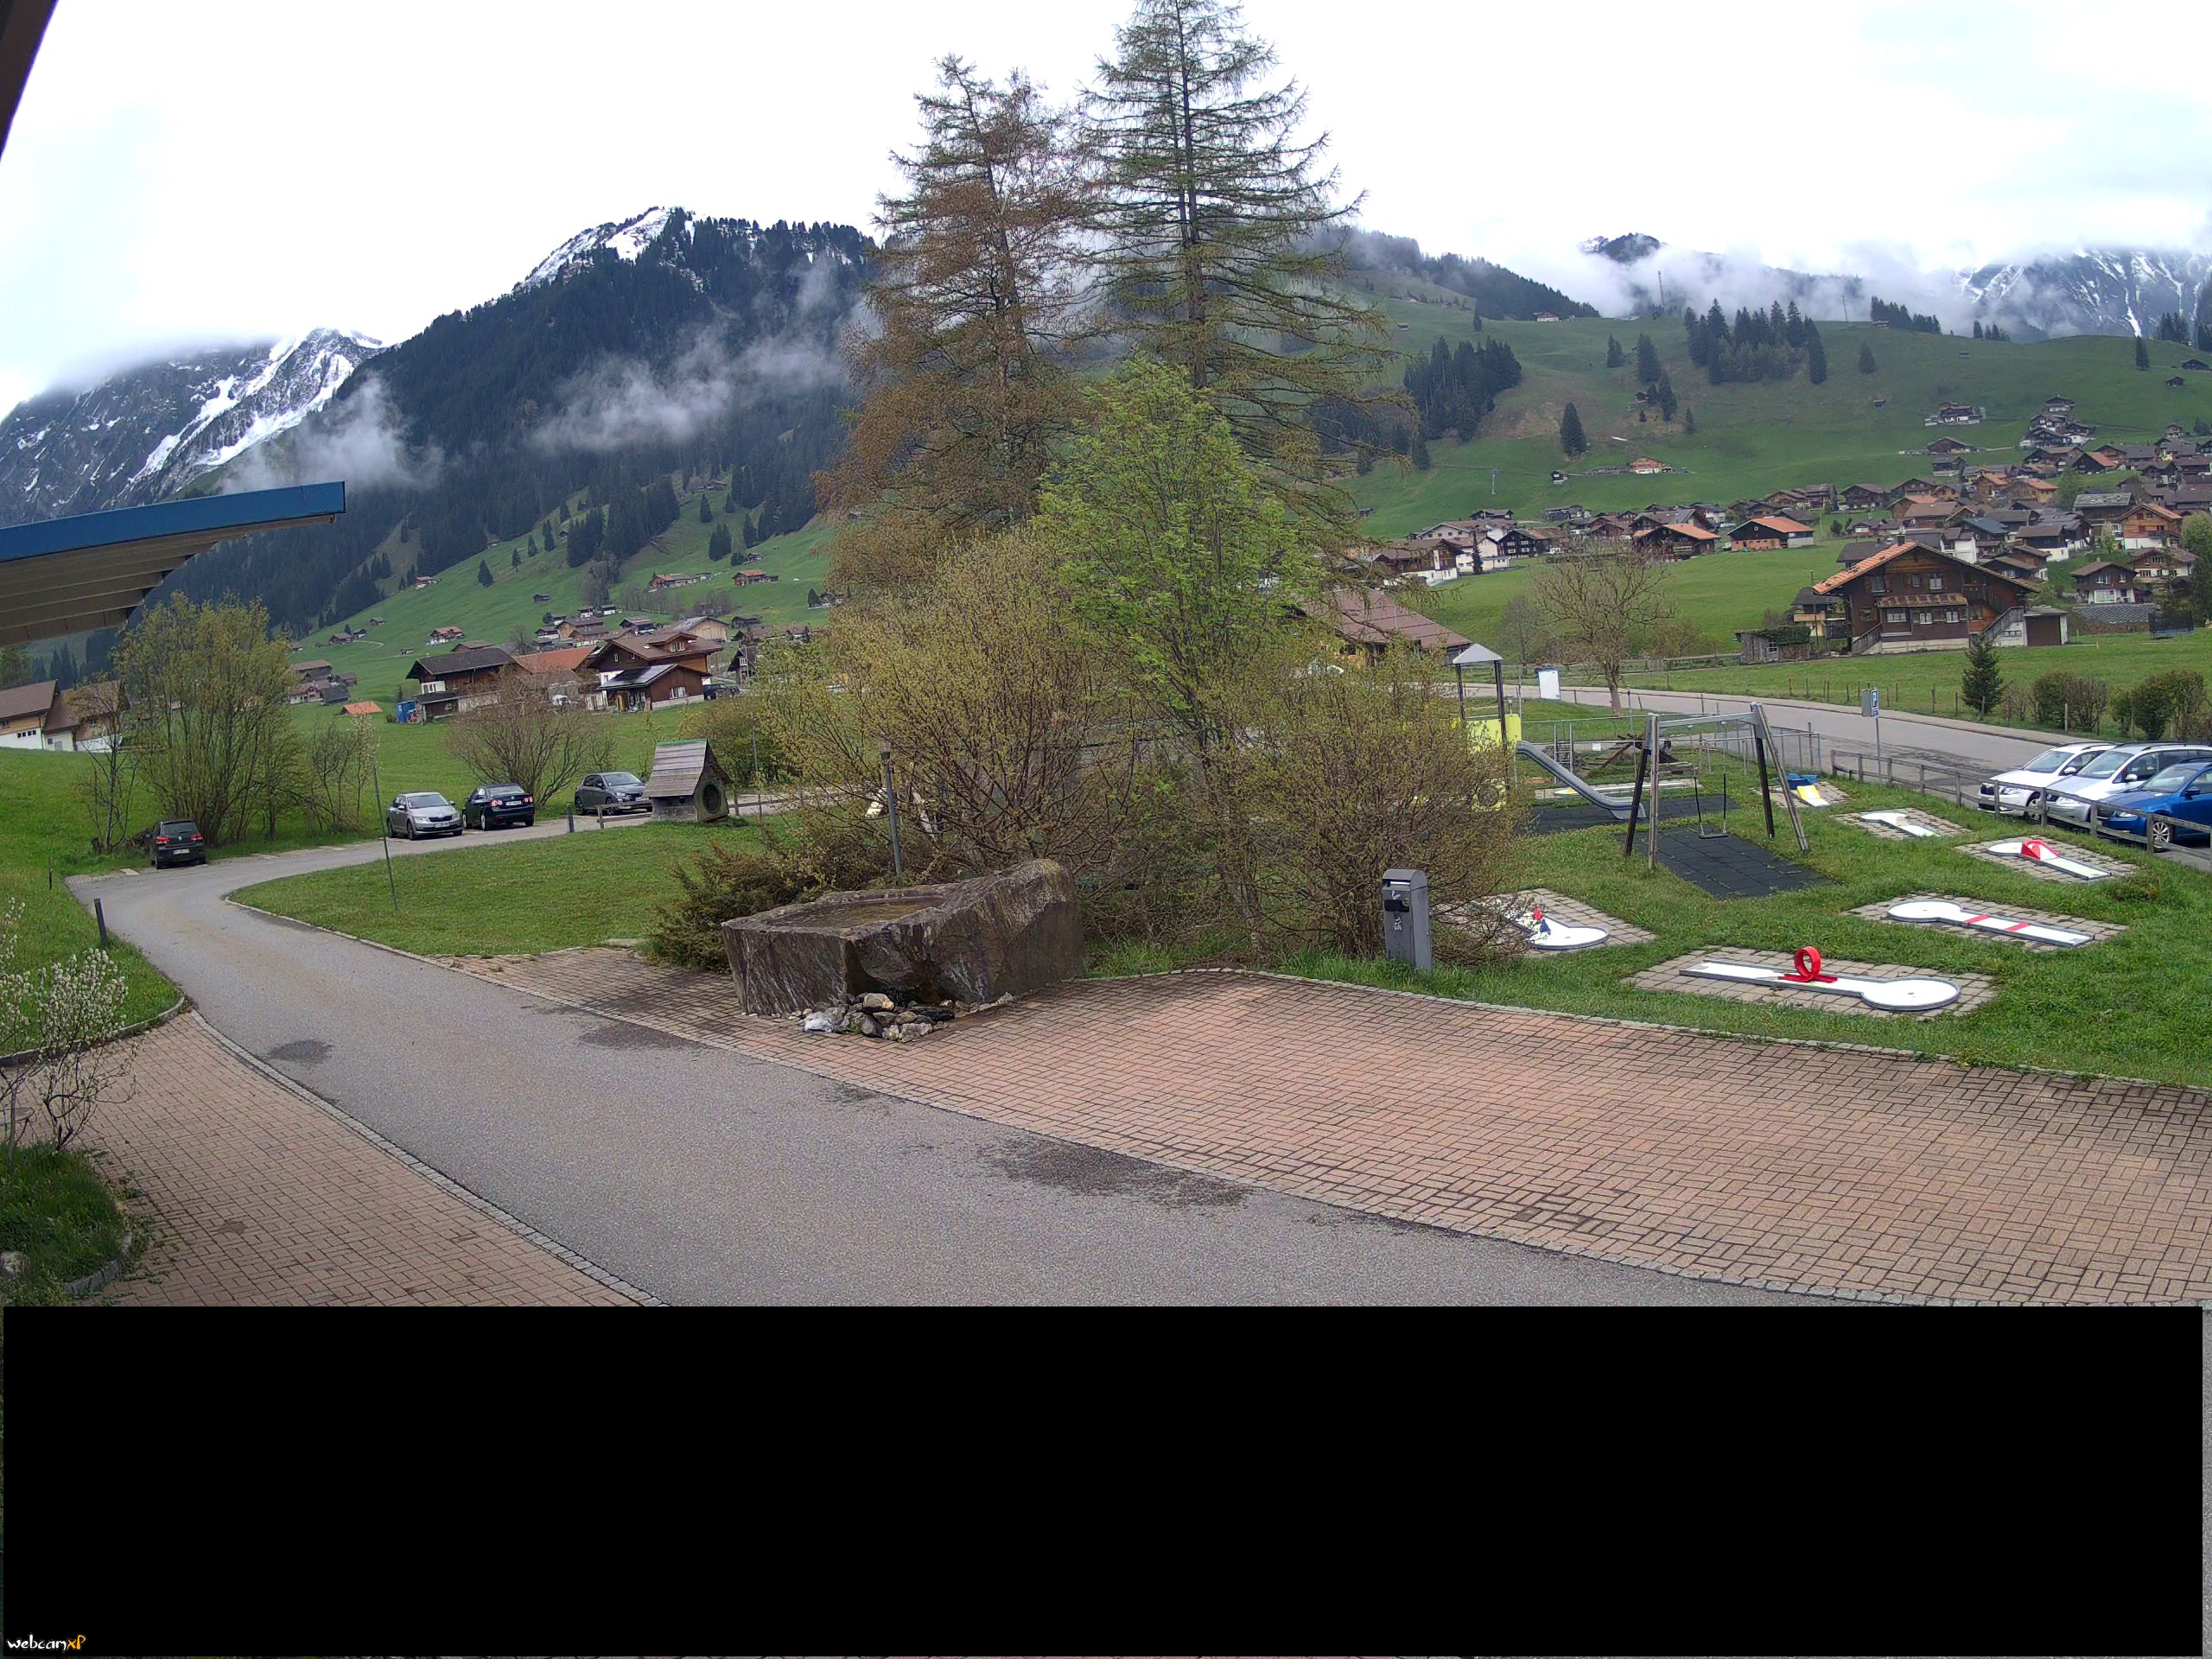 http://webcam.alpina-adelboden.ch/cam_2.jpg